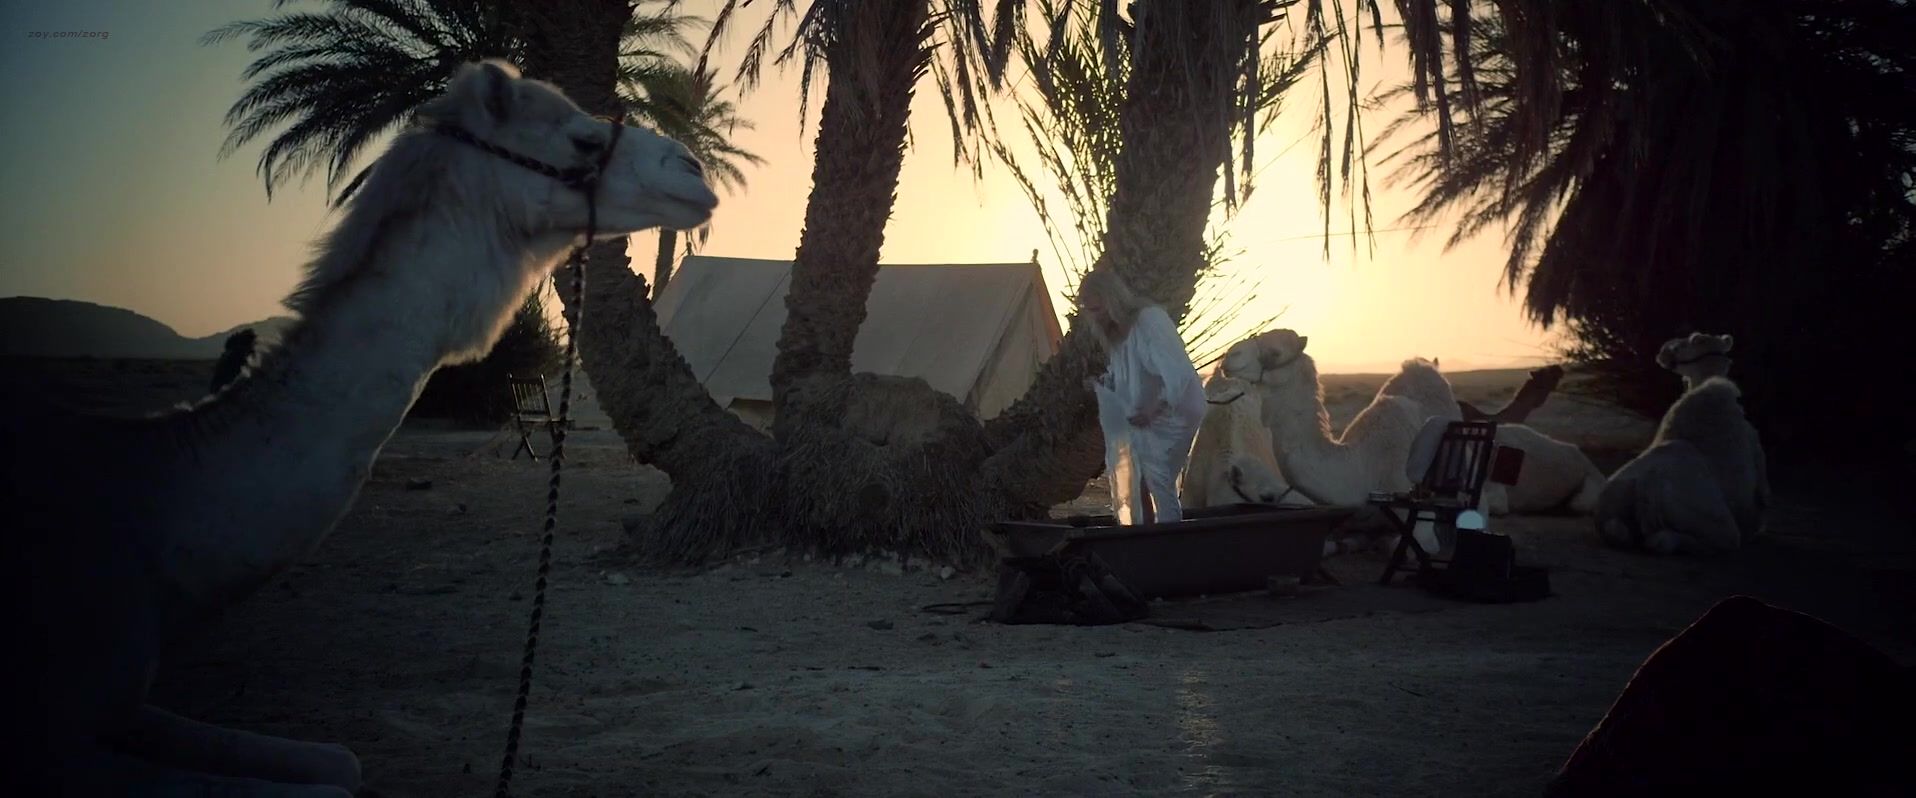 XBizShow Nicole Kidman nude - Queen of the Desert (2016) Stoya